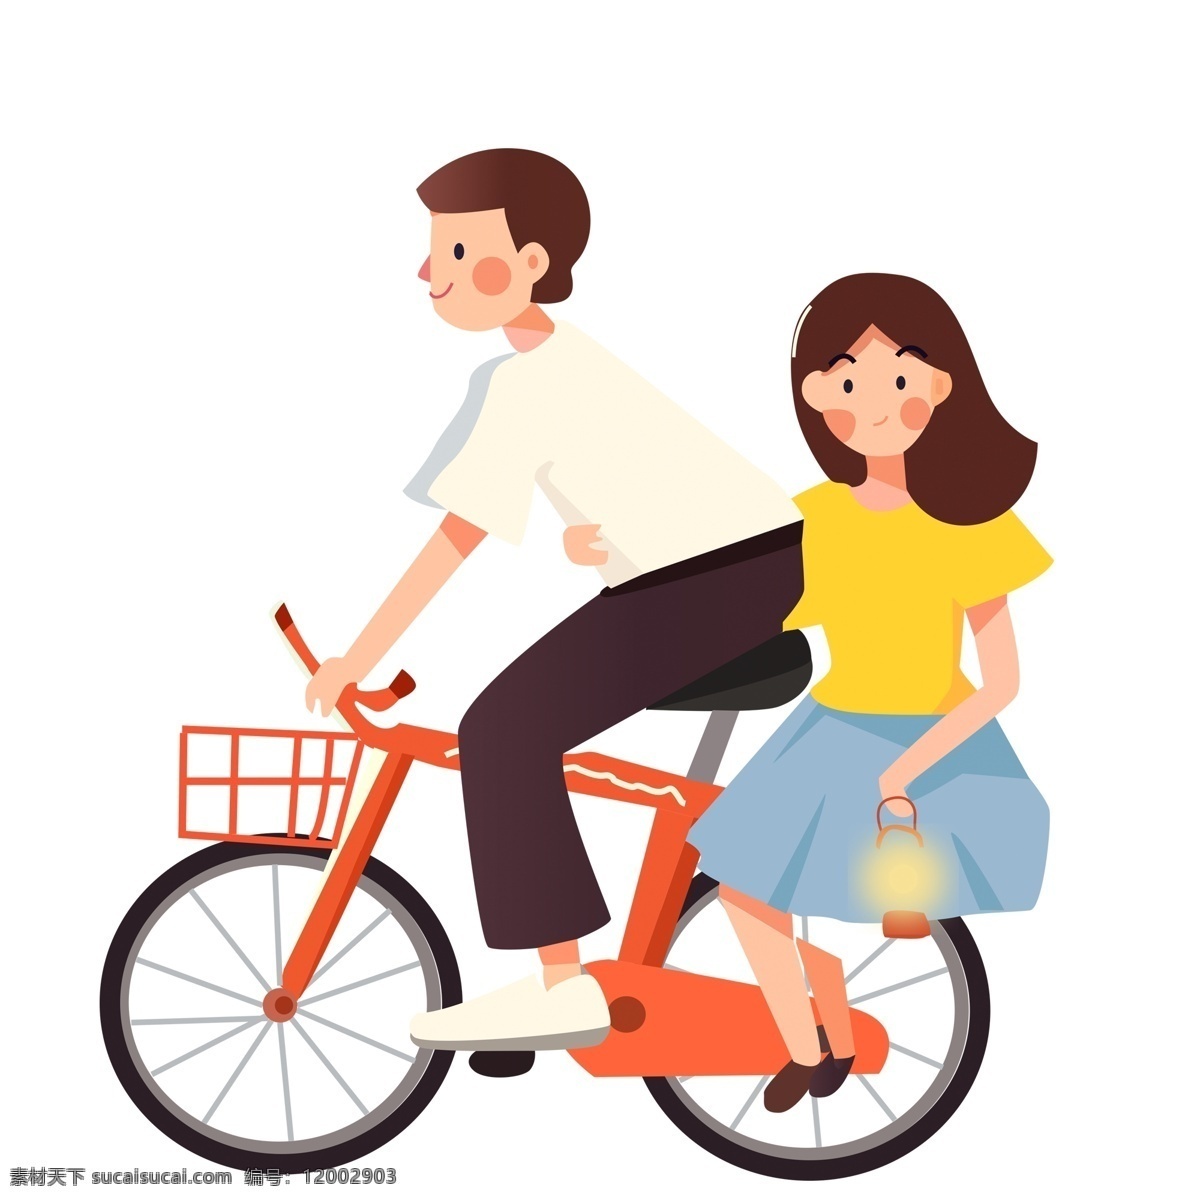 卡通 小 清新 骑 自行车 情侣 小清新 简约 人物 约会 骑自行车 插画